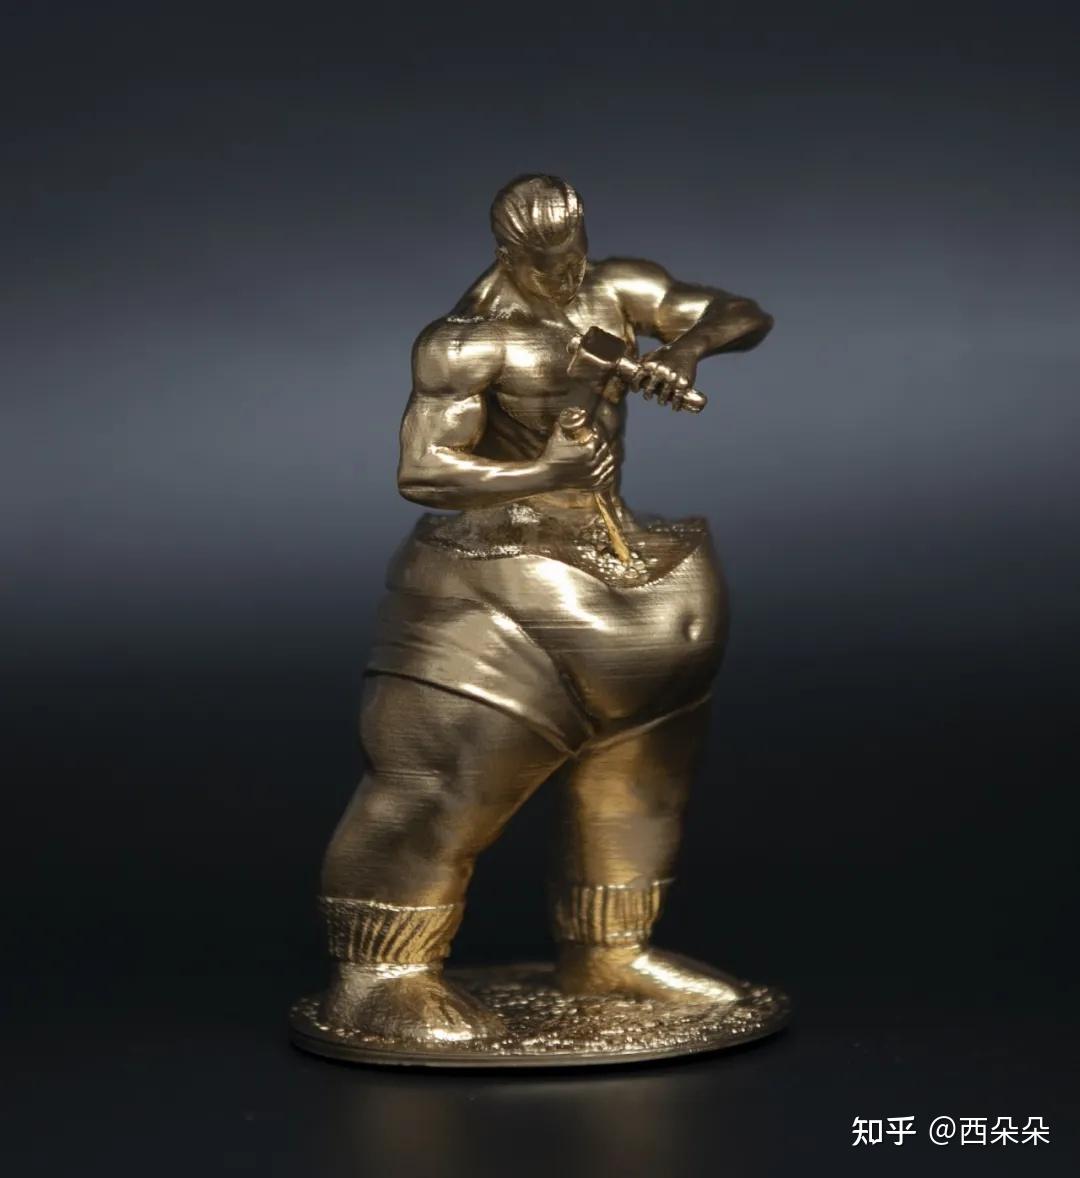 女性雕像—自我雕刻曲线身材小细腰上下鲜明的反差减肥就是华丽